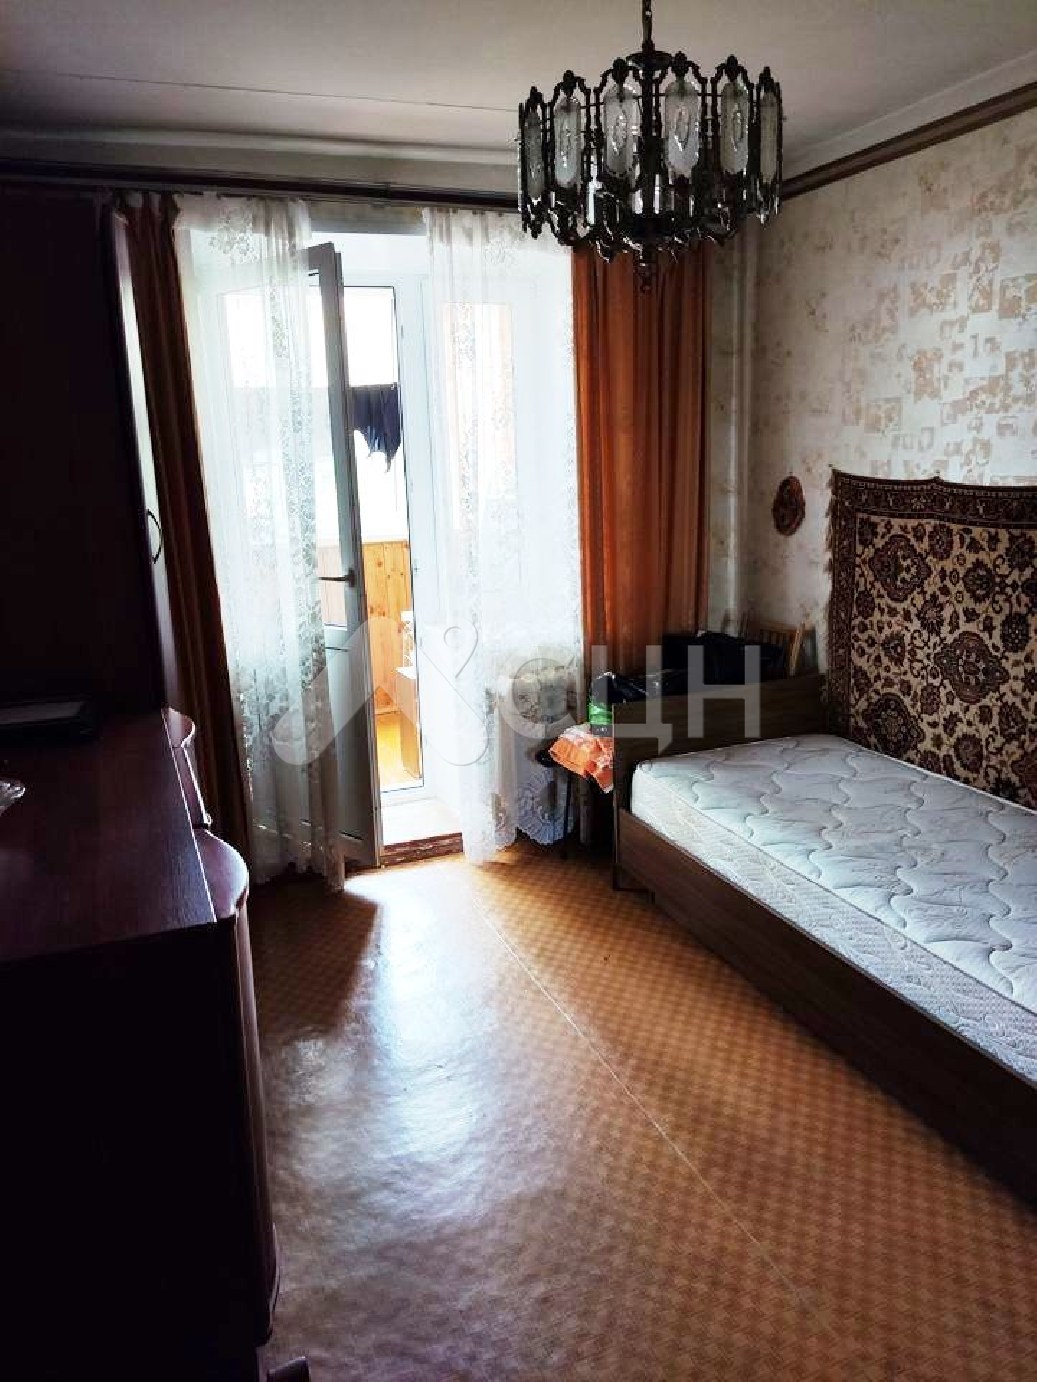 купить квартиру в сарове
: Г. Саров, улица Некрасова, 11, 3-комн квартира, этаж 2 из 9, продажа.